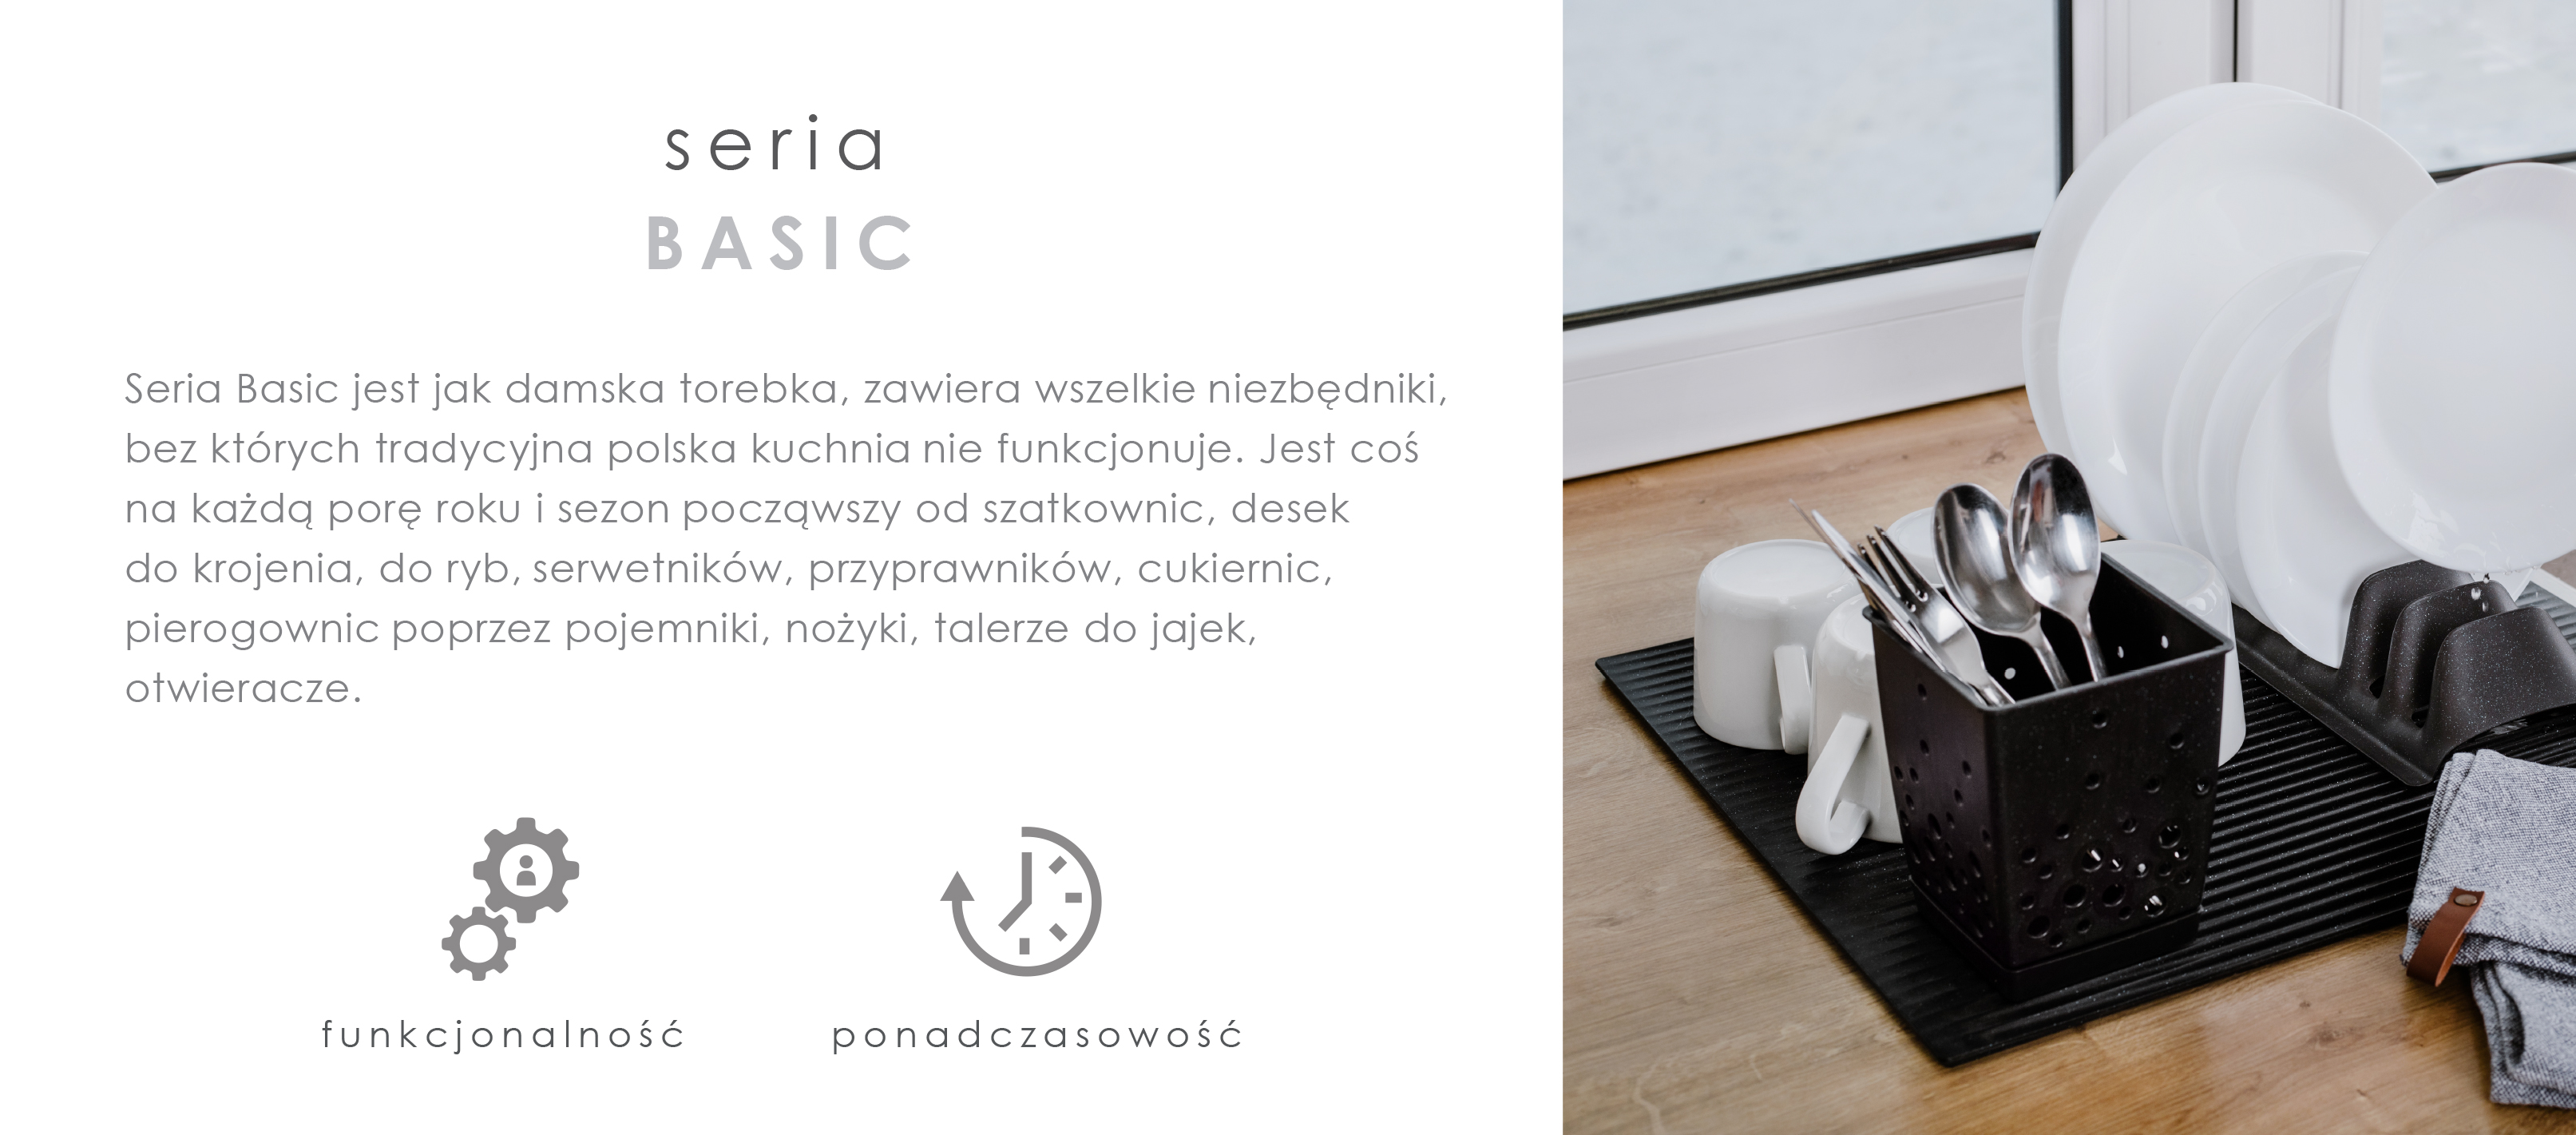 Seria BASIC PLASTIK jest jak damska torebka, zawiera wszelkie niezbędniki, bez których tradycyjna polska kuchnia nie funkcjonuje. Jest coś na każdą porę roku i sezon począwszy od szatkownic, desek do krojenia, do ryb, serwetników, przyprawników, cukiernic, pierogownic poprzez pojemniki , nożyki, talerze do jajek, otwieracze.